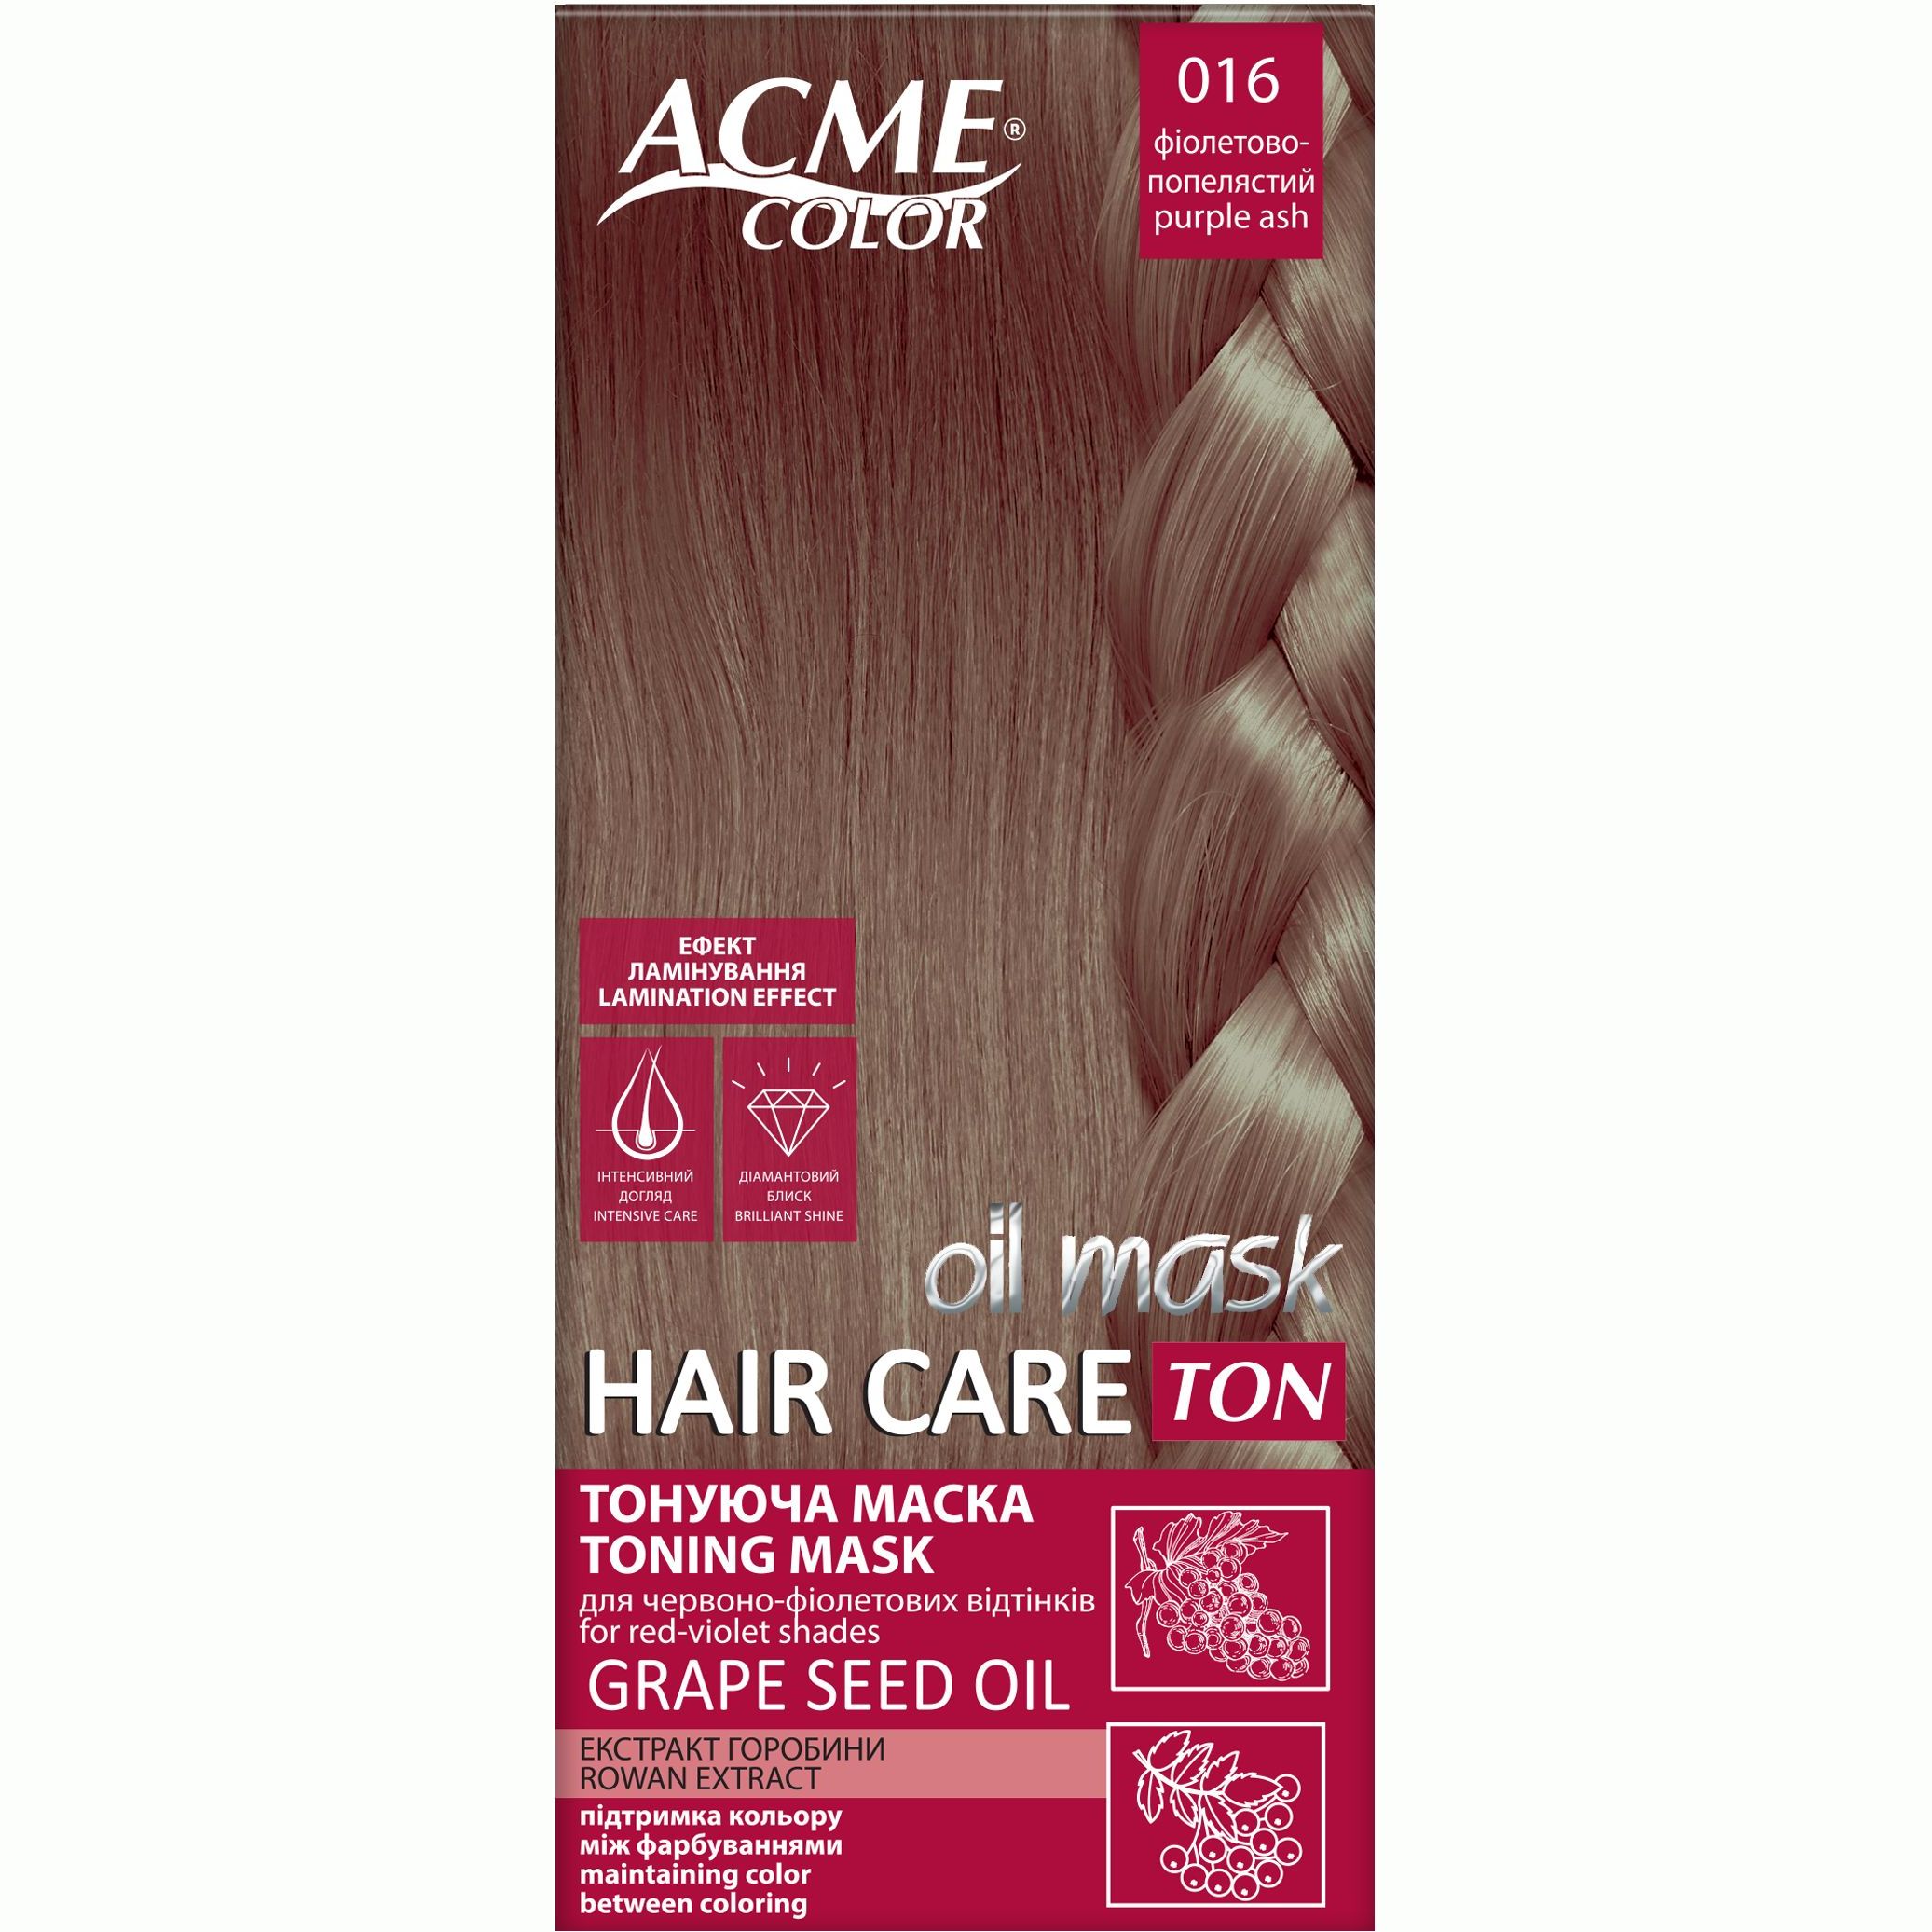 Тонирующая маска для волос Acme Color Hair Care Ton oil mask, тон 016, фиолетово-пепельный, 30 мл - фото 1